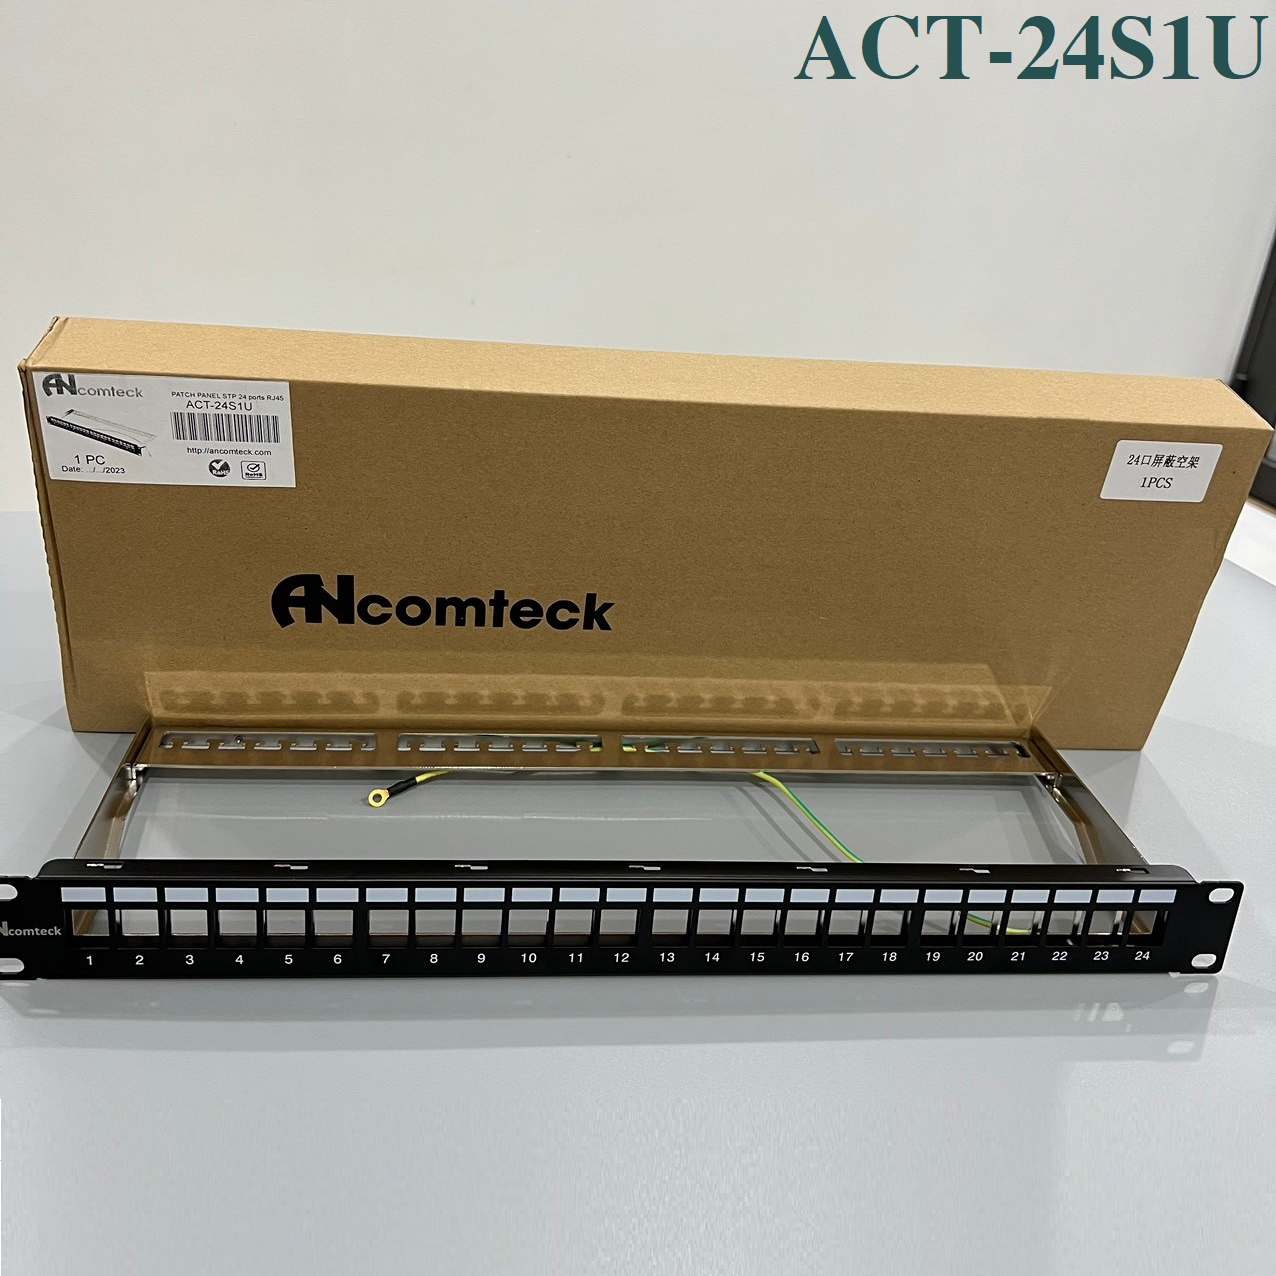 Thanh đấu nối mạng PATCH PANEL STP 24 cổng CAT6 mã ACT-24S1U, ACT-6U-88  ANCOMTECK